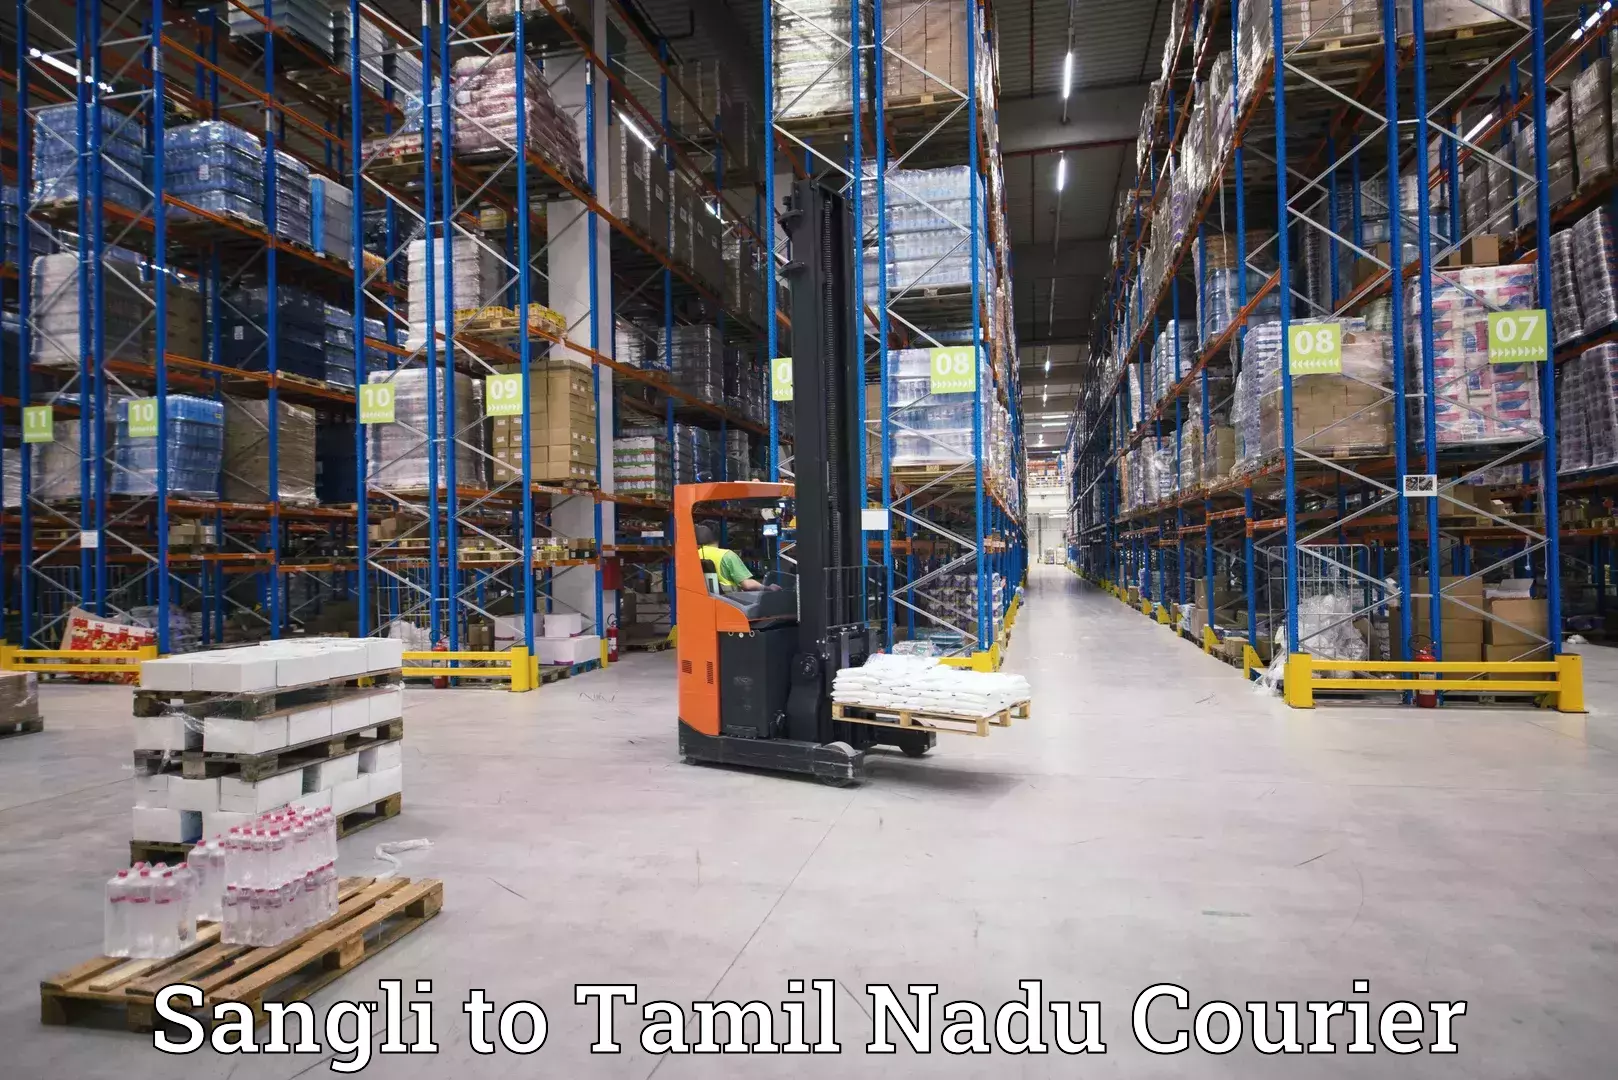 Innovative courier solutions Sangli to Tamil Nadu